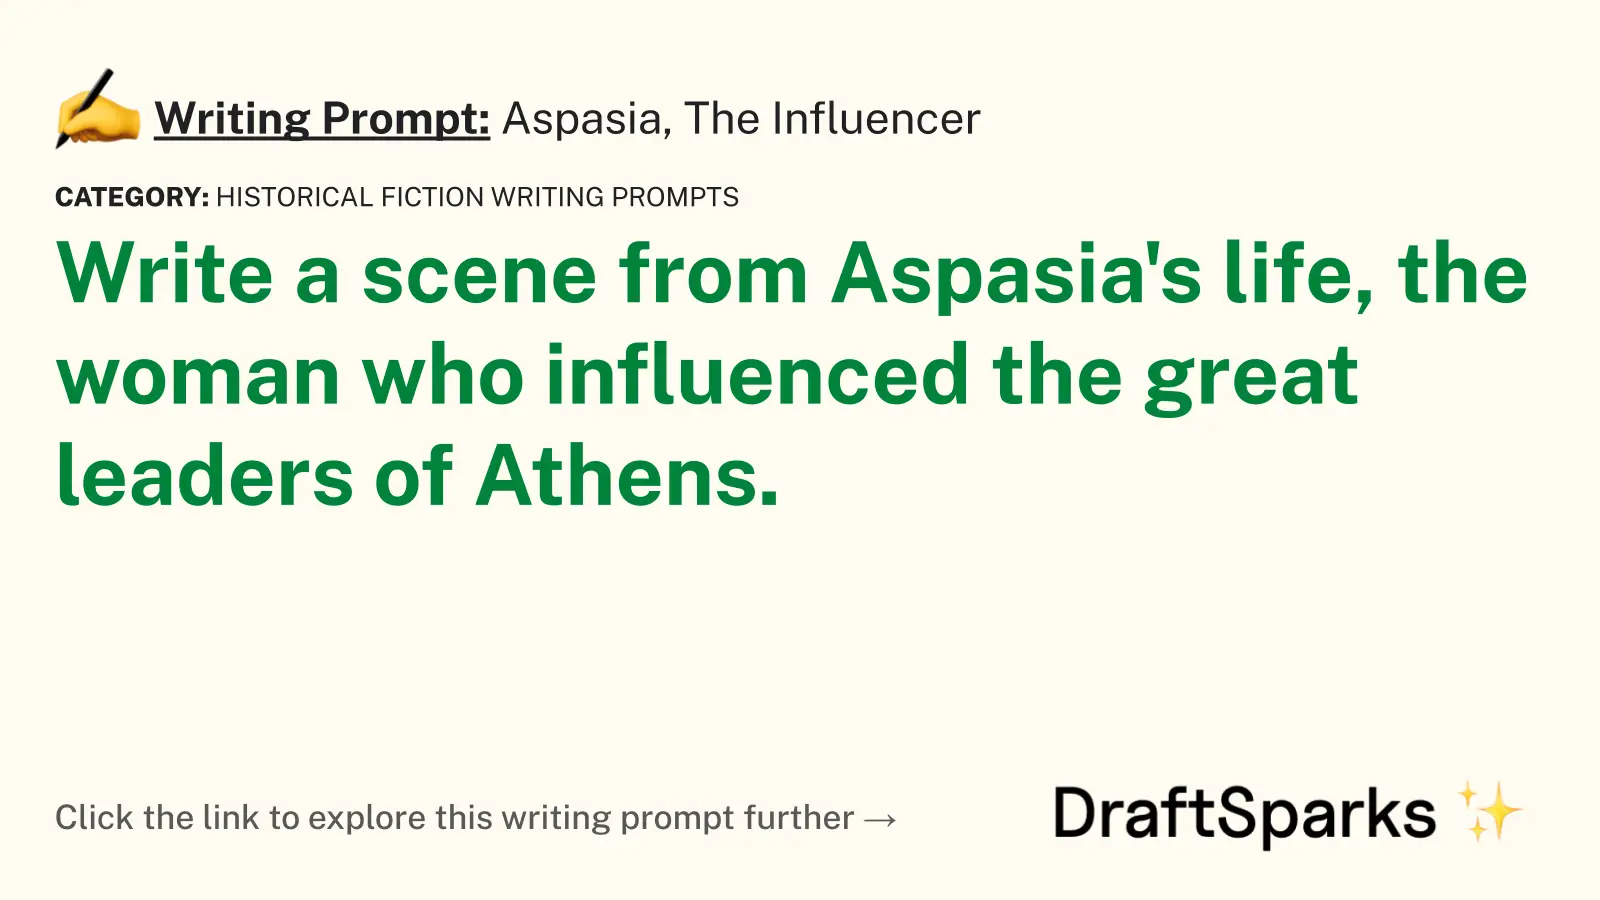 Aspasia, The Influencer